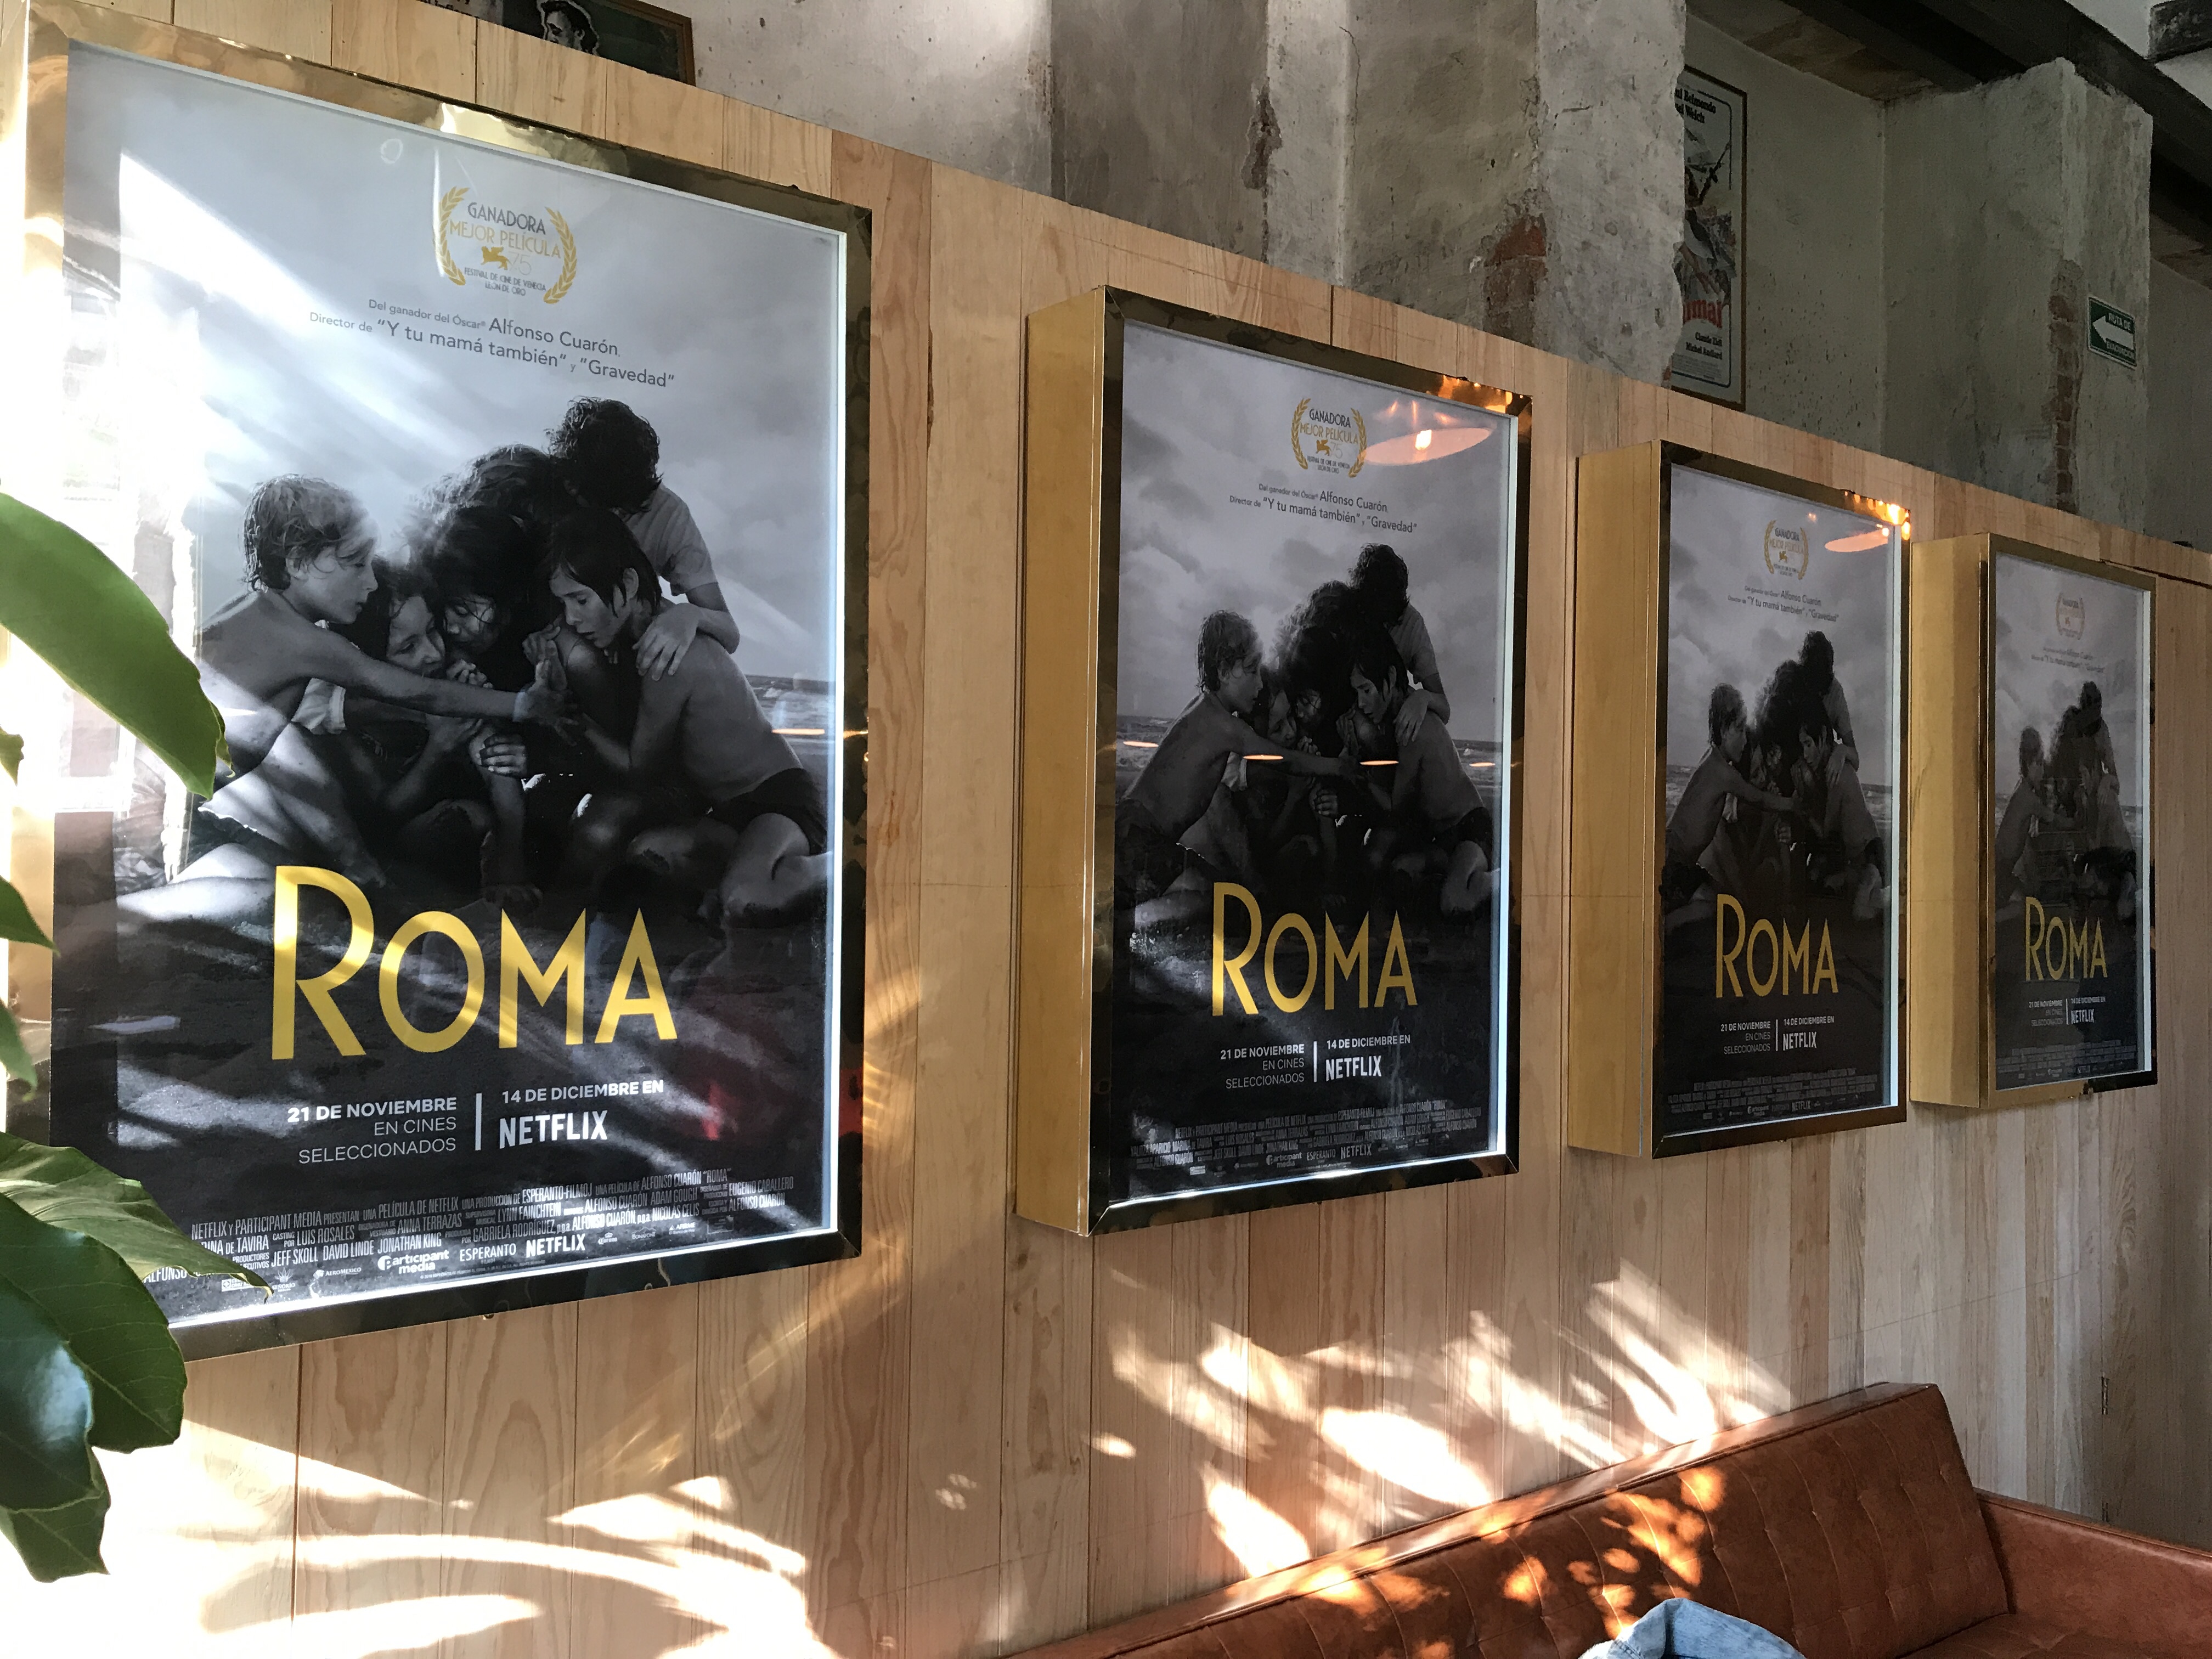  Fotografía, dirección y mejor película extranjera, Óscares de Roma en 2019